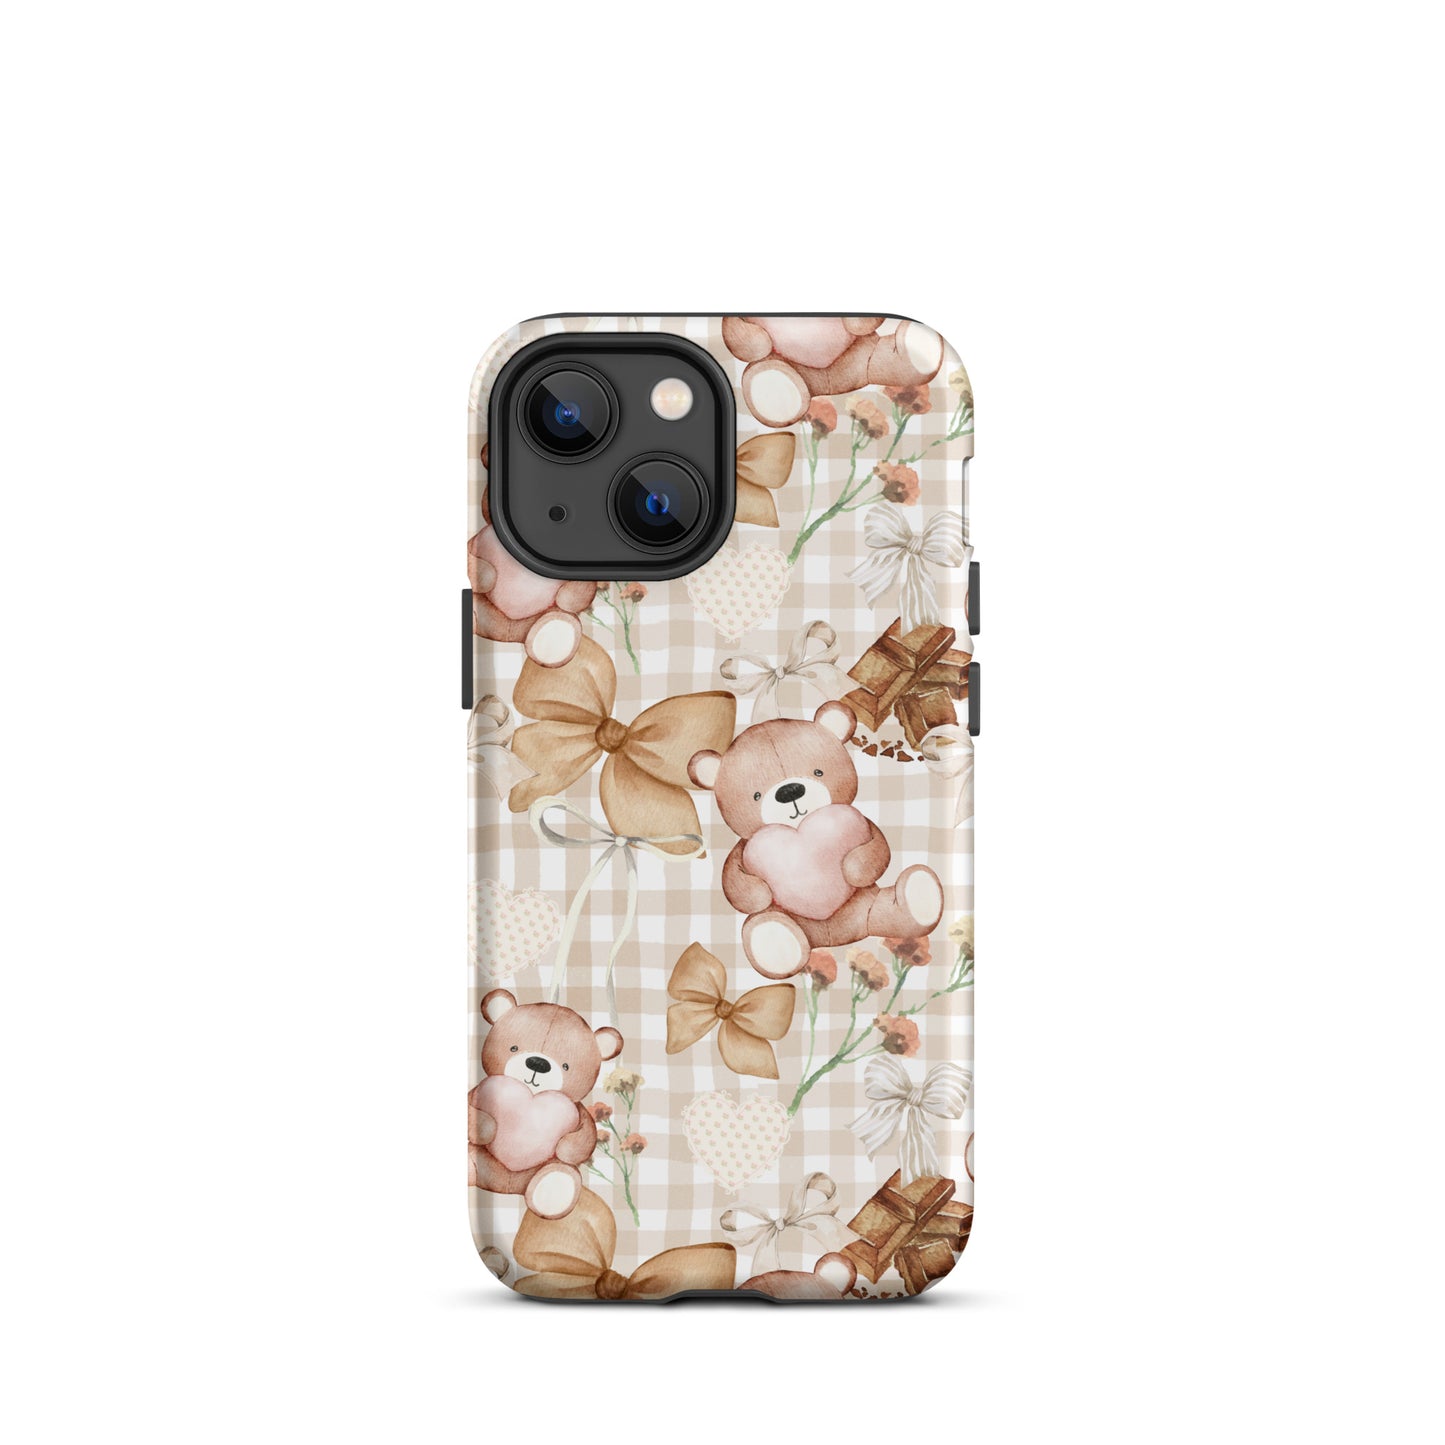 Choco Teddy Bear iPhone Case